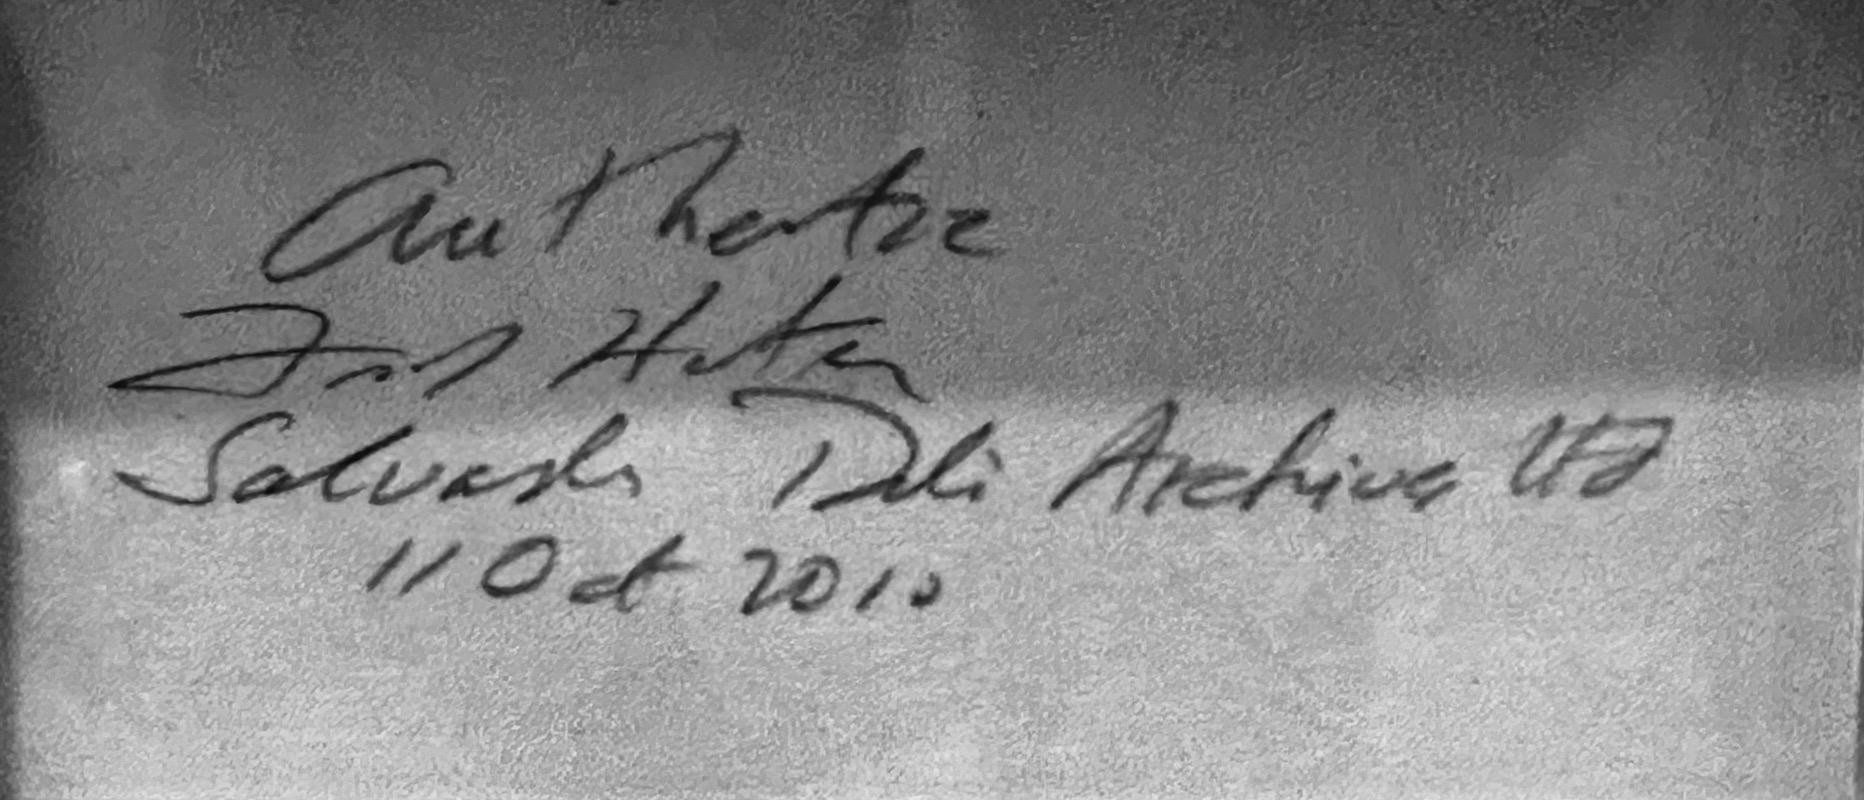 KÜNSTLER: Salvador Dali

TITEL: Der Magier Vanite

MEDIUM: Radierung

SIGNIERT: Handsigniert 

VERLAG: Editions Argillet, Paris

AUFLAGENNUMMER: 33/100

MASSNAHMEN: Papier: 11.2